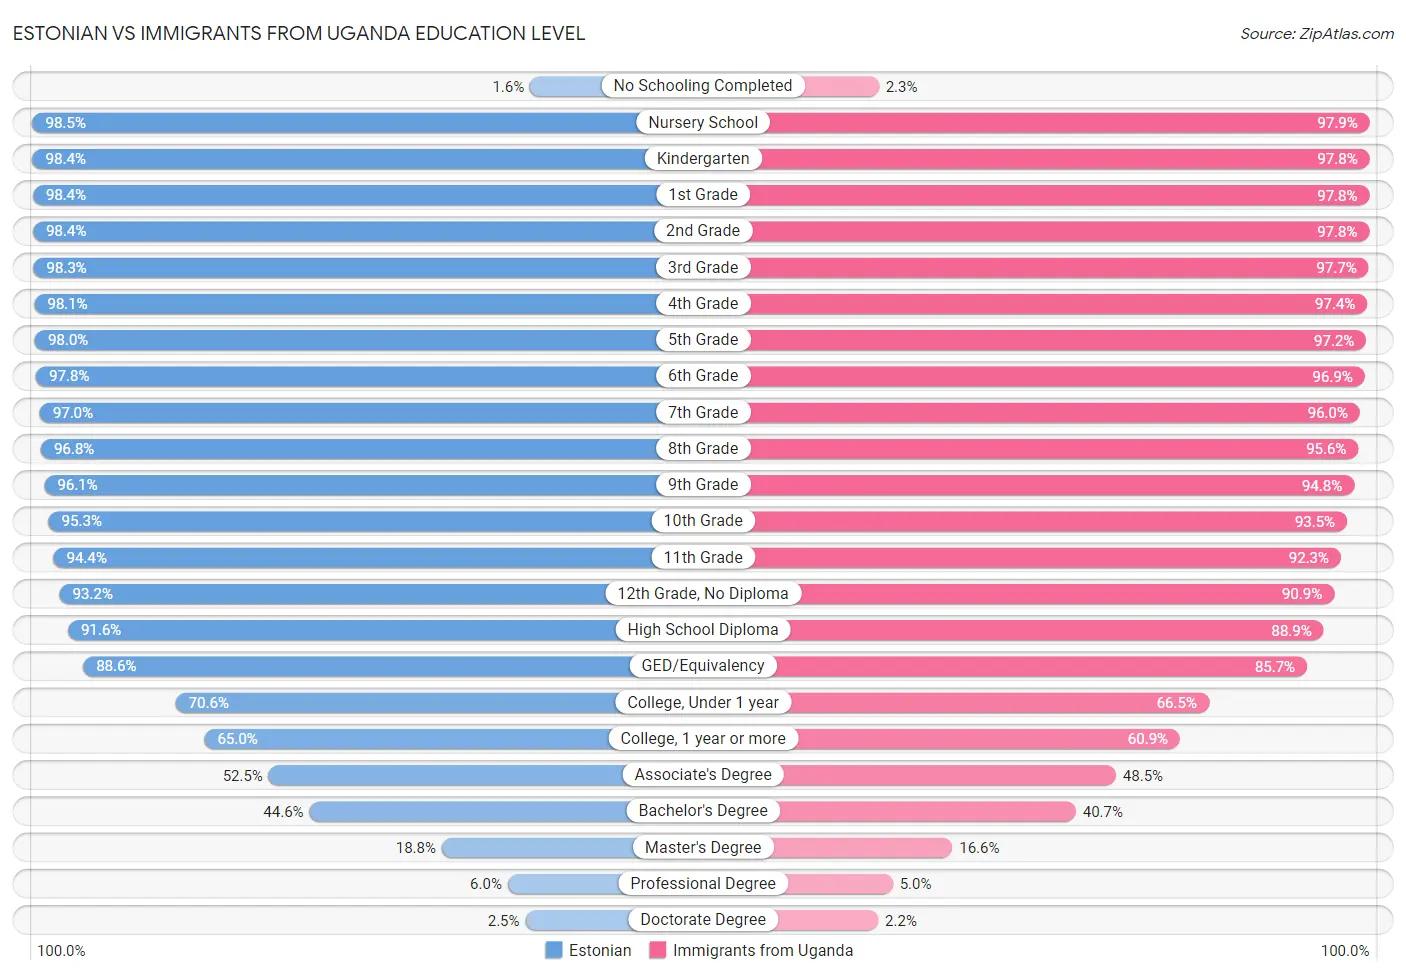 Estonian vs Immigrants from Uganda Education Level